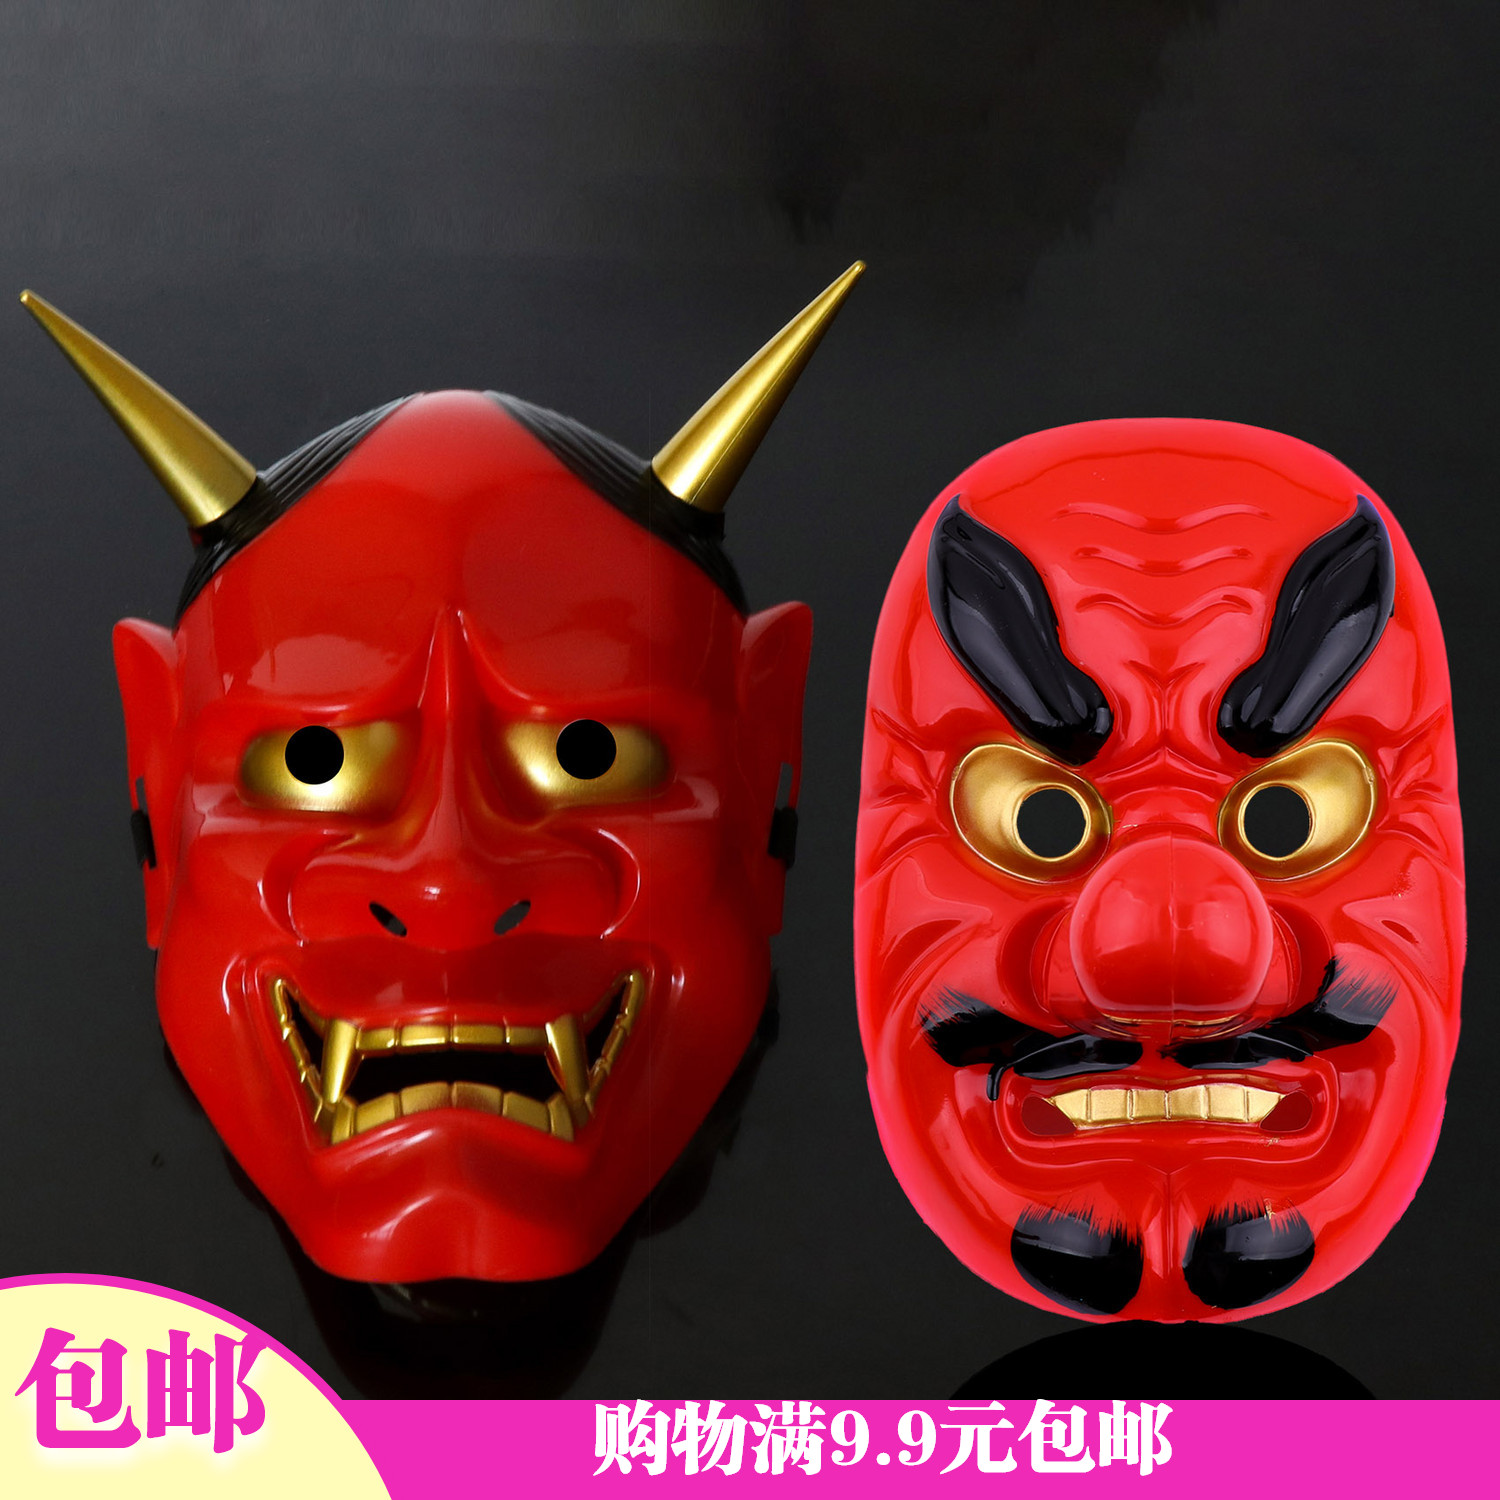 1万圣节日本能剧天狗面具恐怖红魔般若武士动漫派对酒吧用品